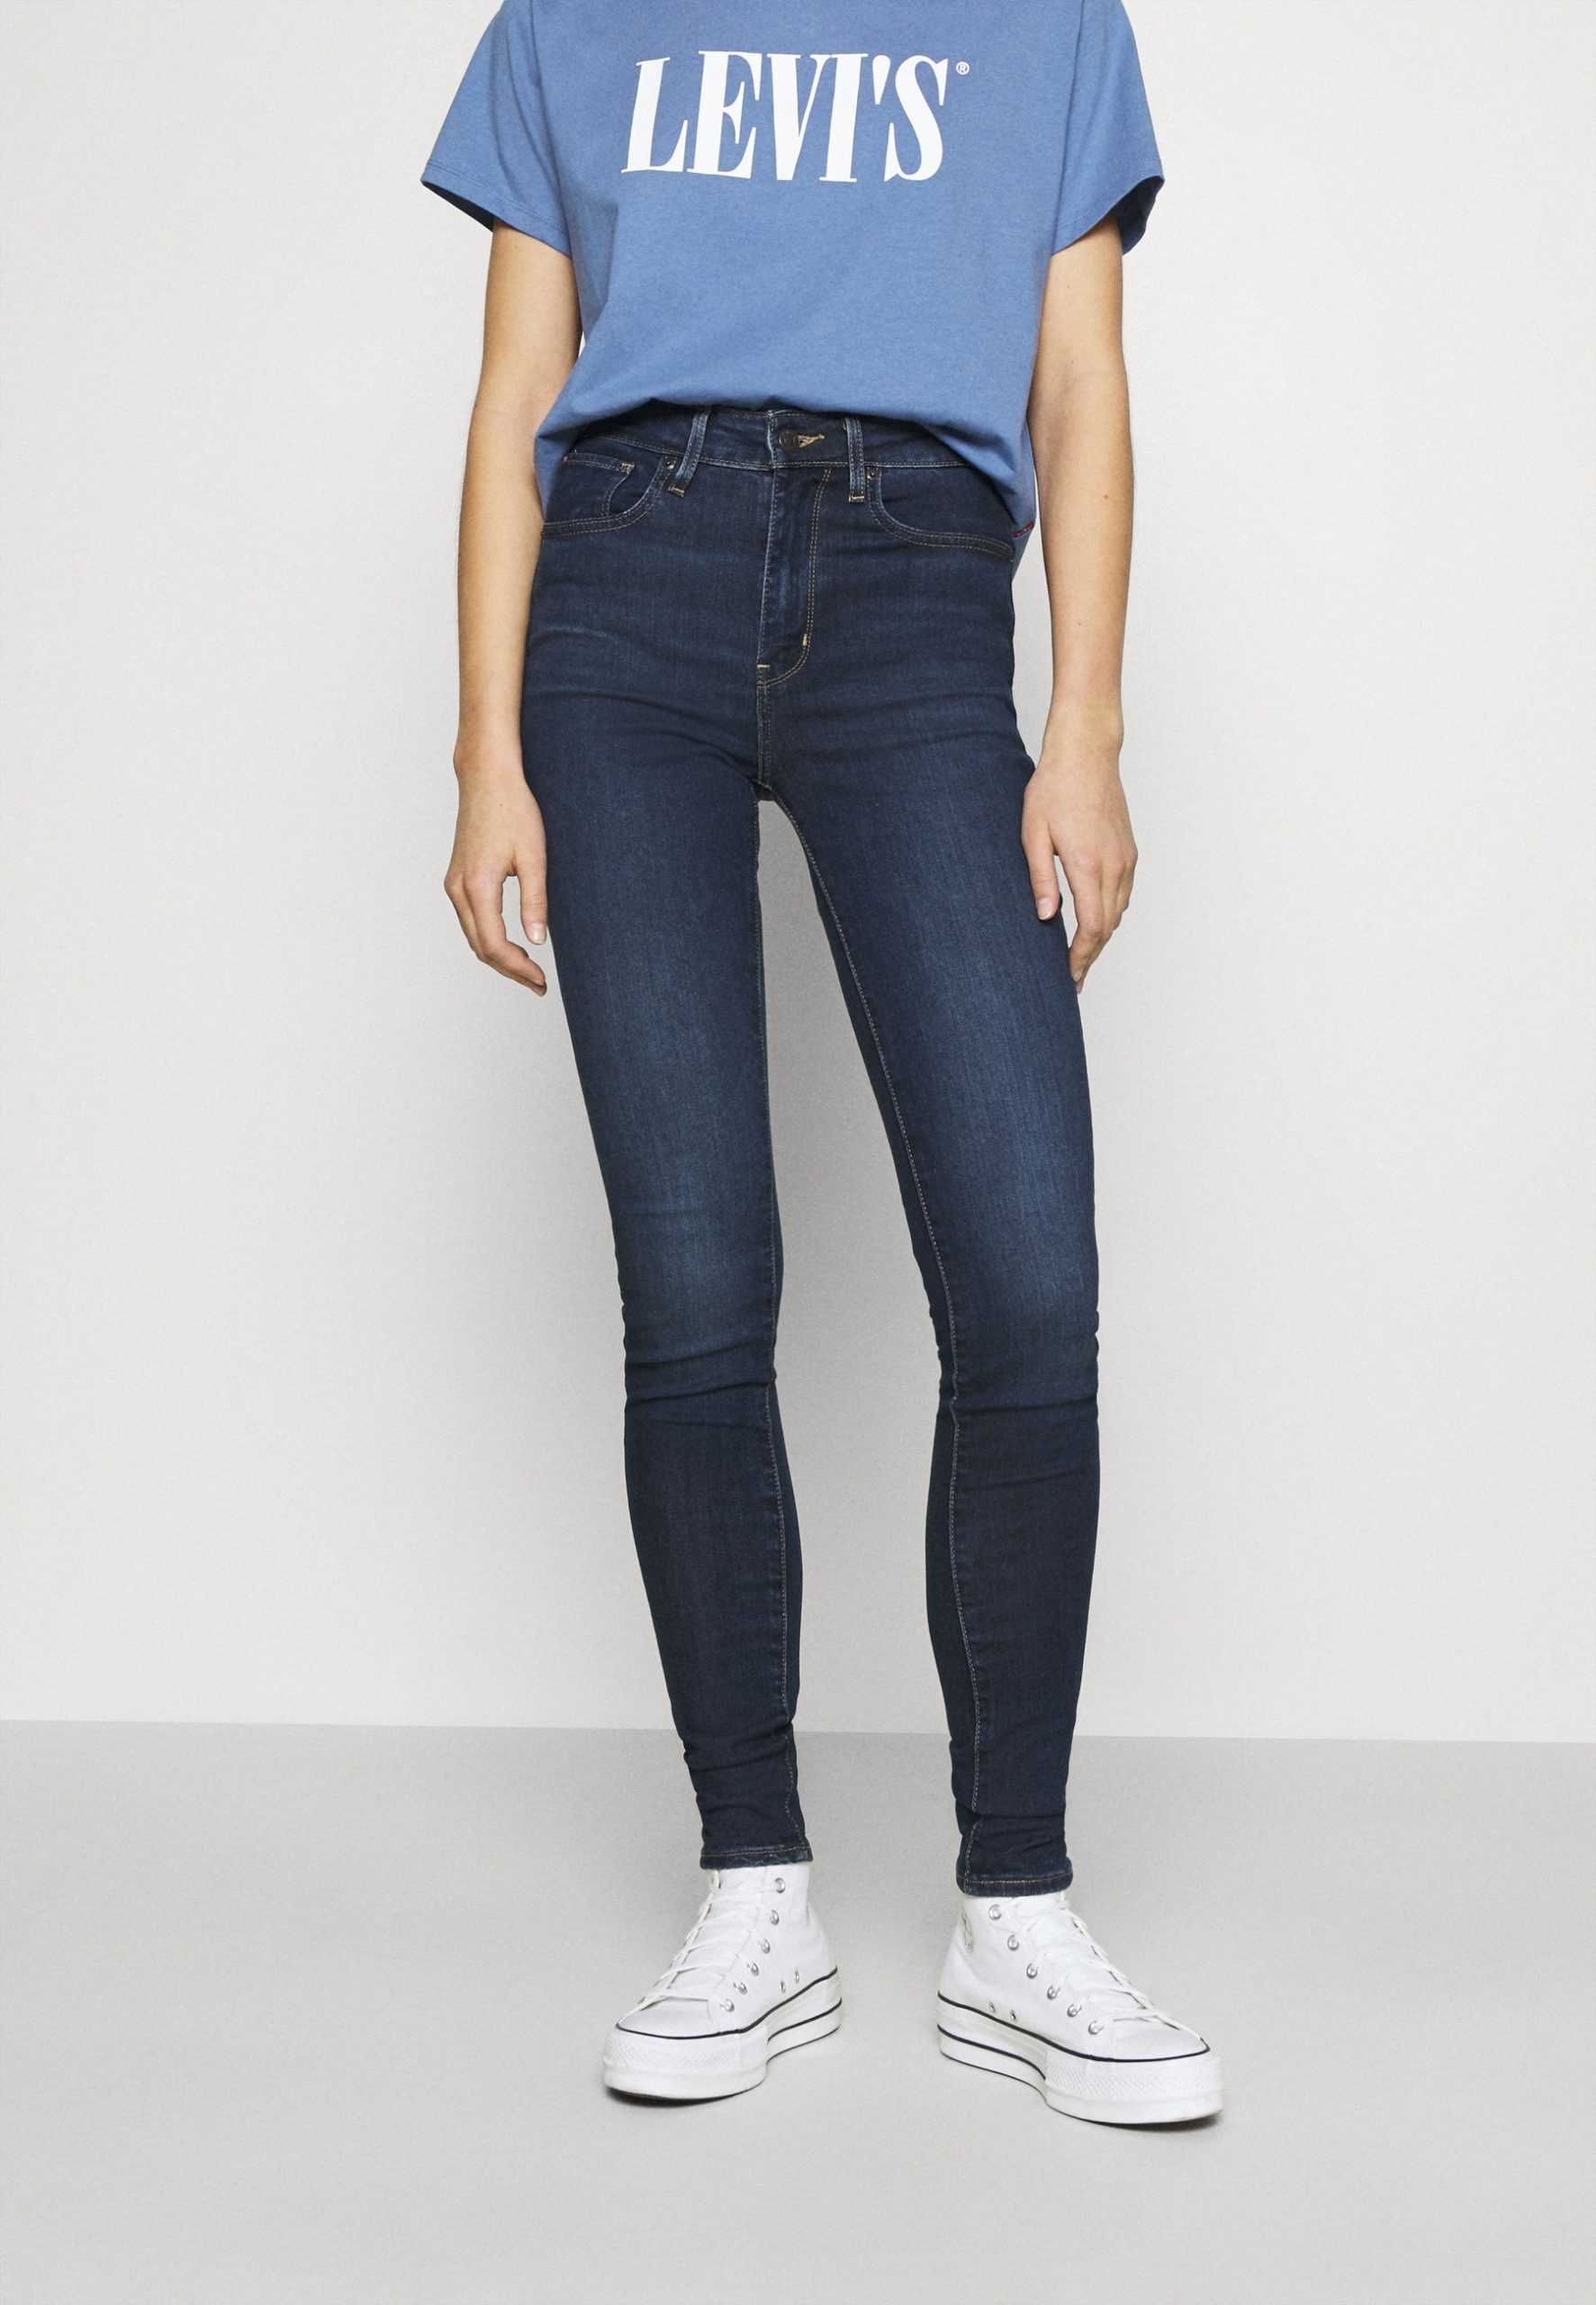 levis 721 womens jeans